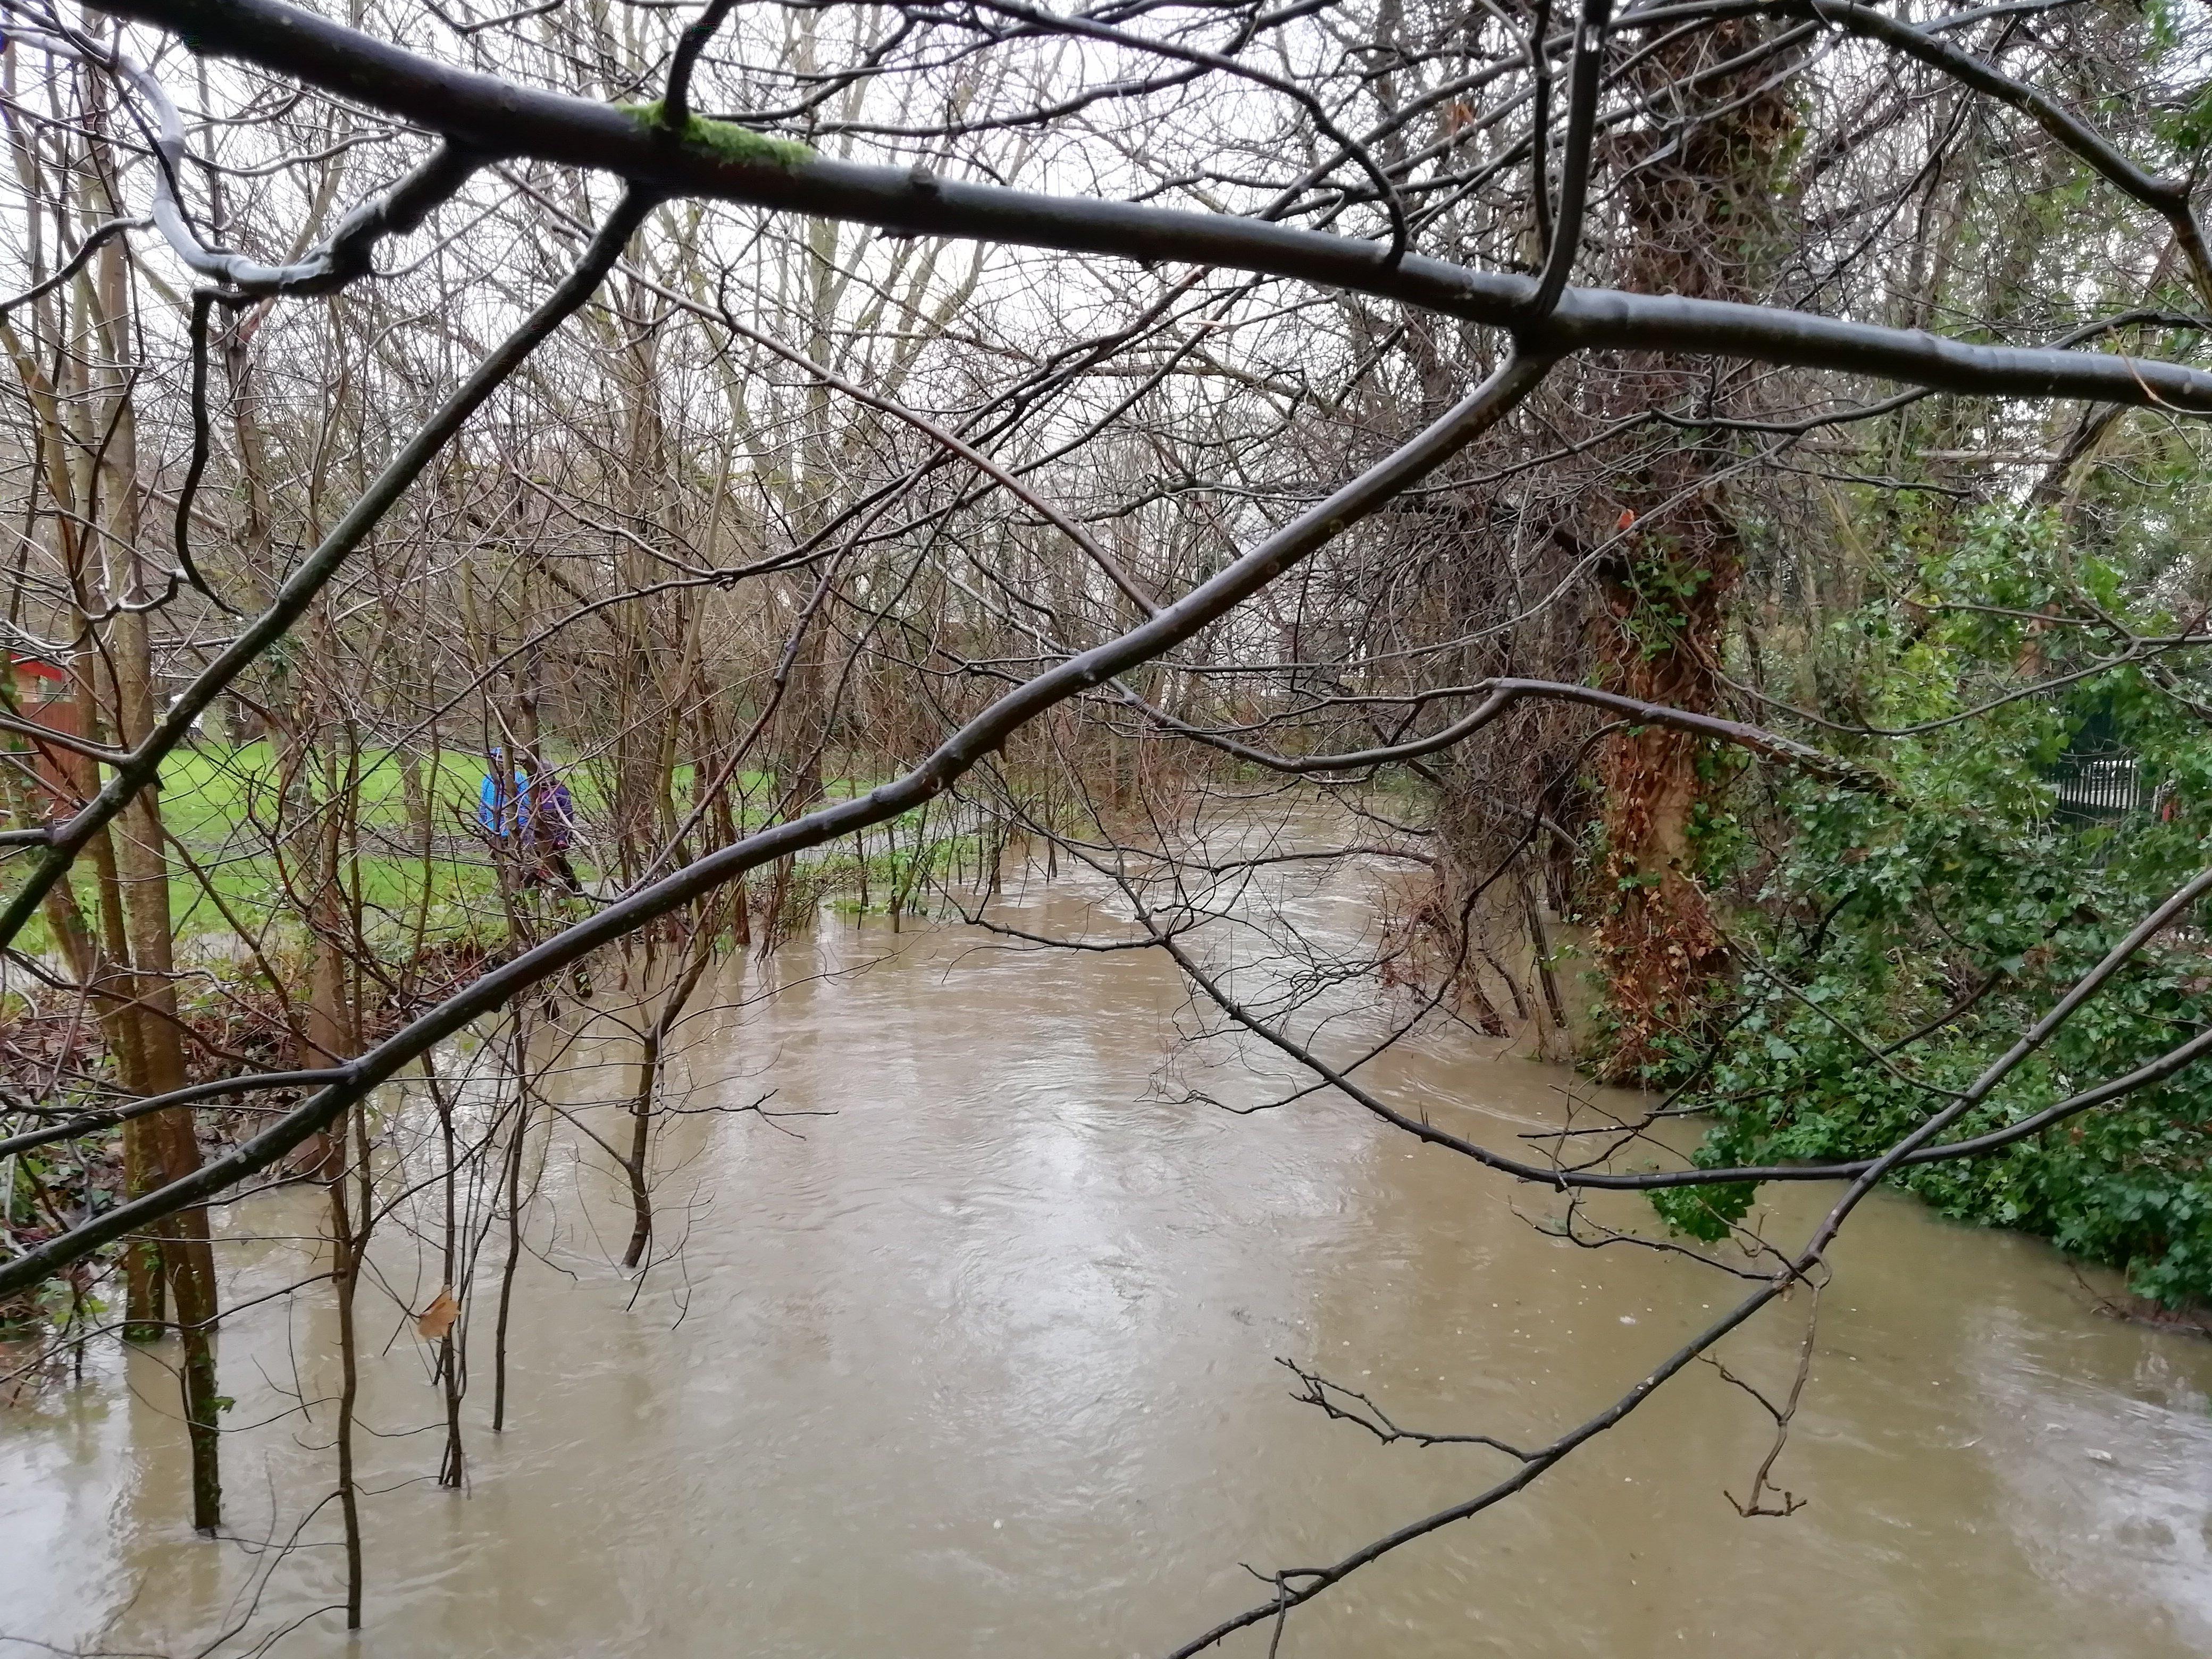 The River Arun has burst its banks near Tanbridge Park